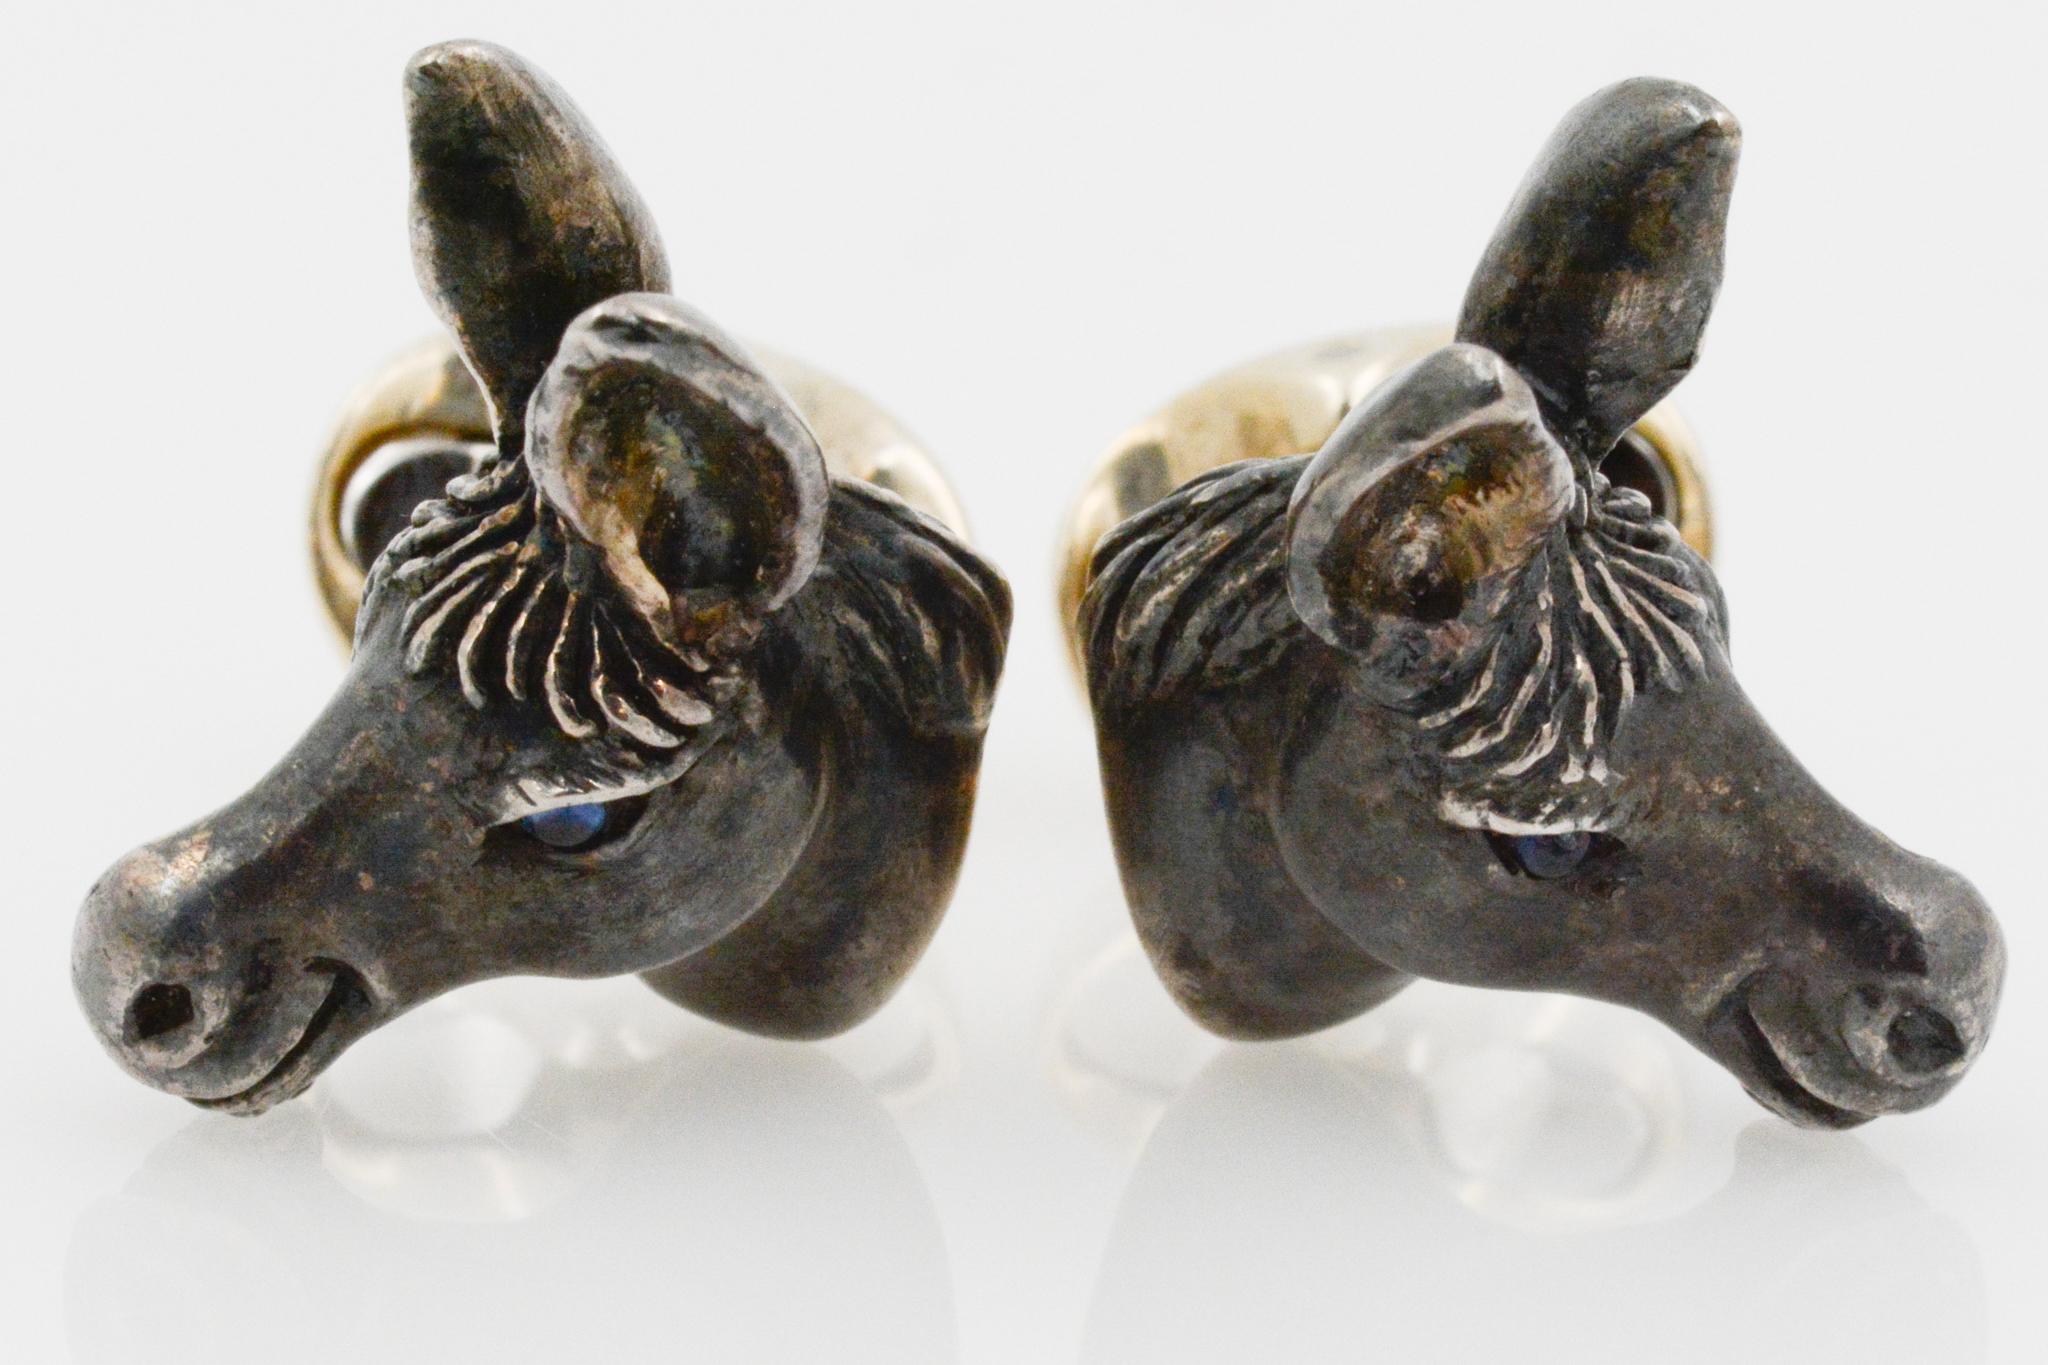 Diese Manschettenknöpfe aus Sterling haben ein lebensechtes Eselskopf-Design, das die komplizierten Details der Ohren, der Mähne und der saphirblauen Augen zur Geltung bringt. Diese Manschettenknöpfe haben ovale Rückseiten. 

